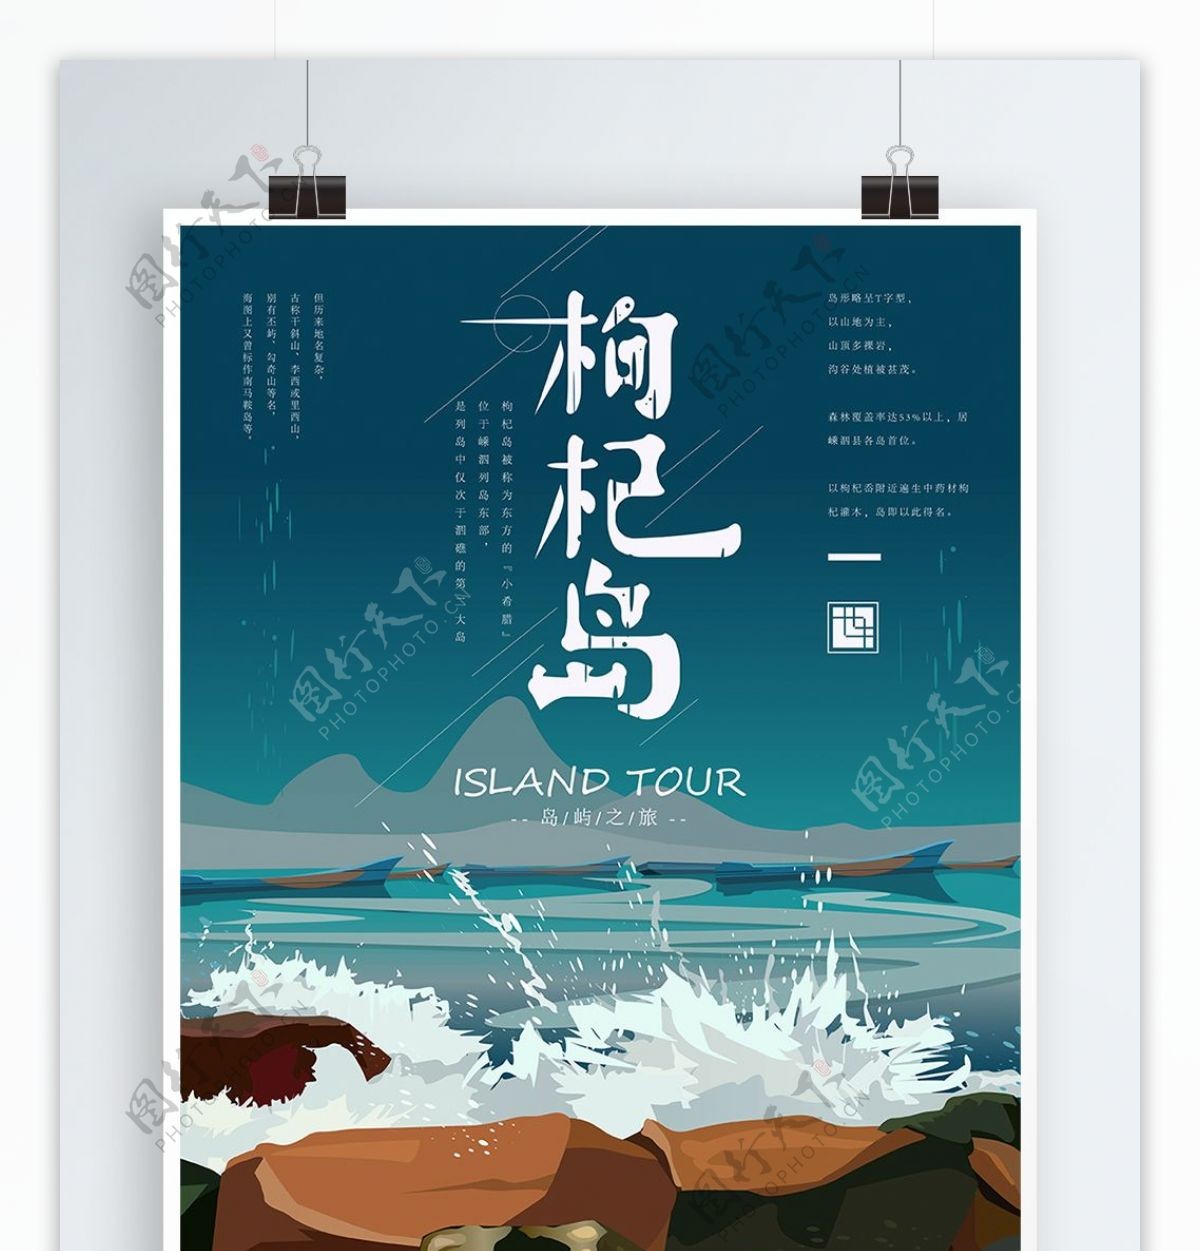 原创手绘简约枸杞岛旅游海报